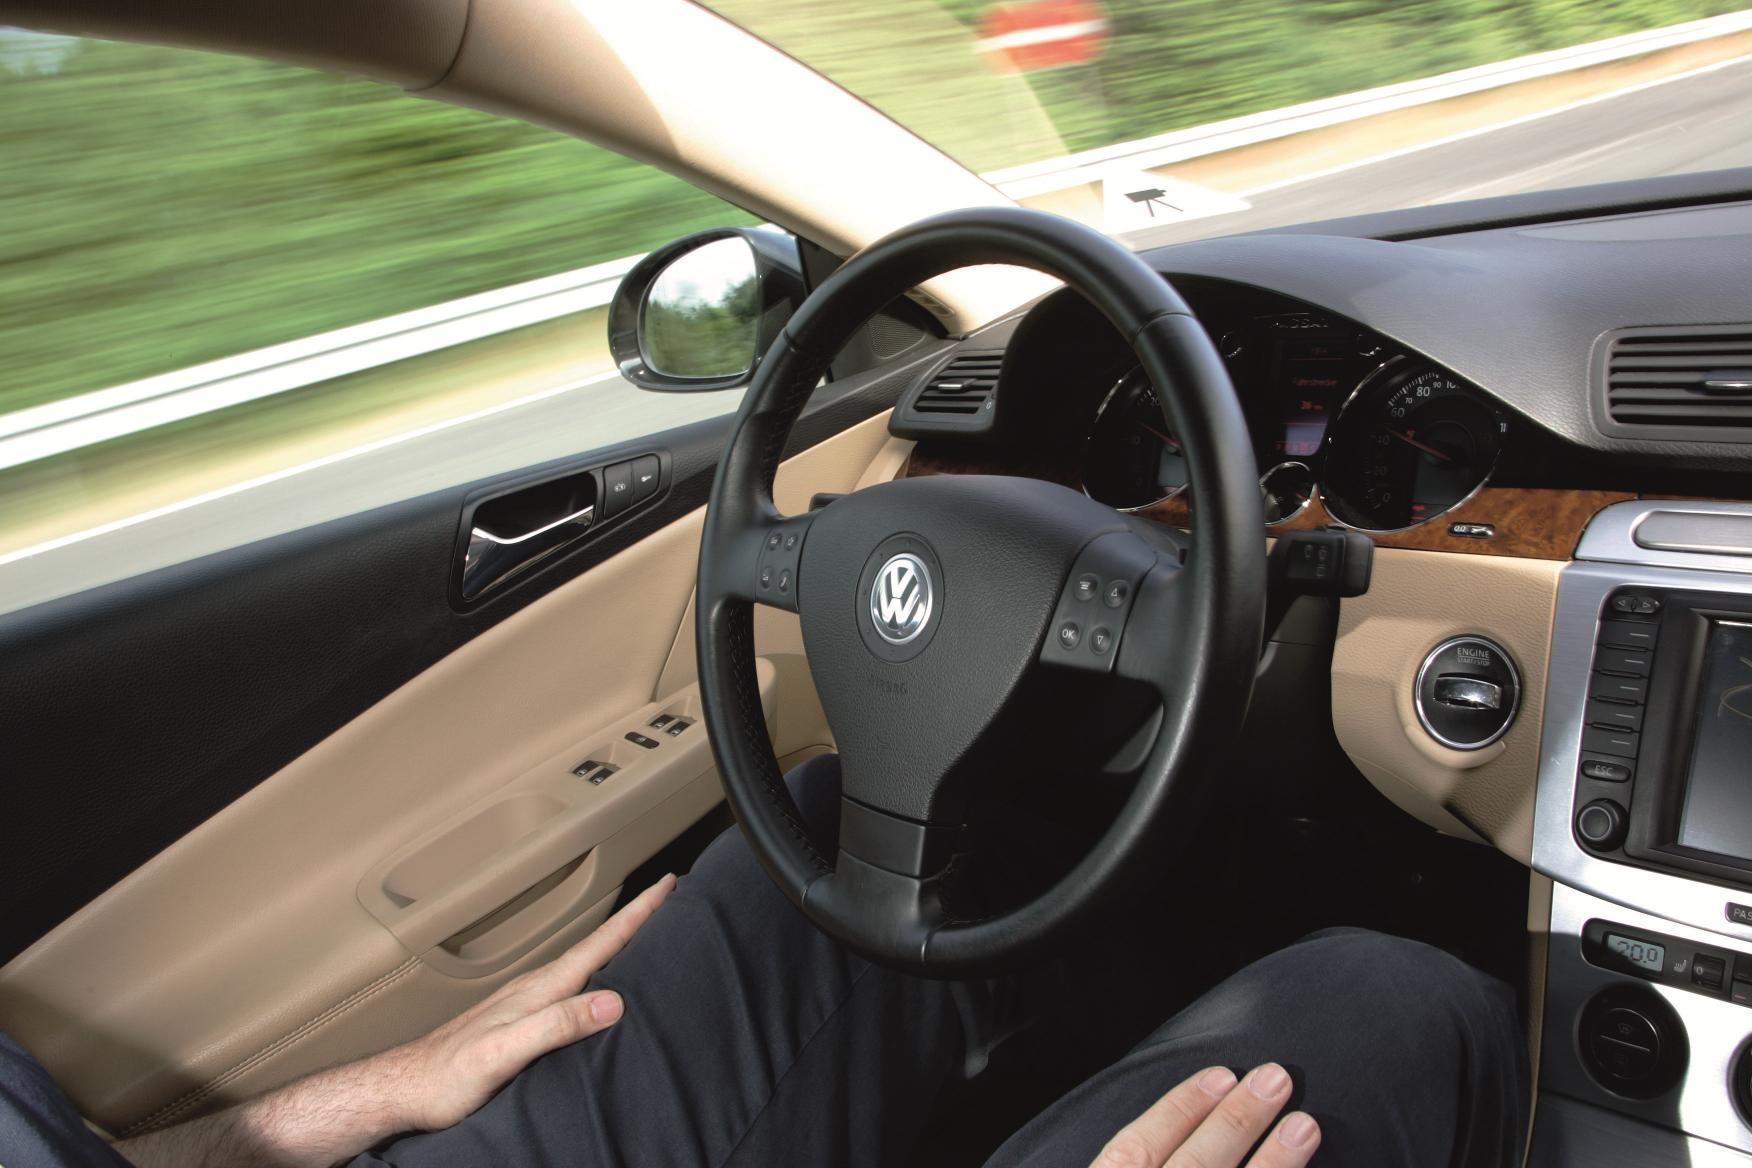 VW autonomous car